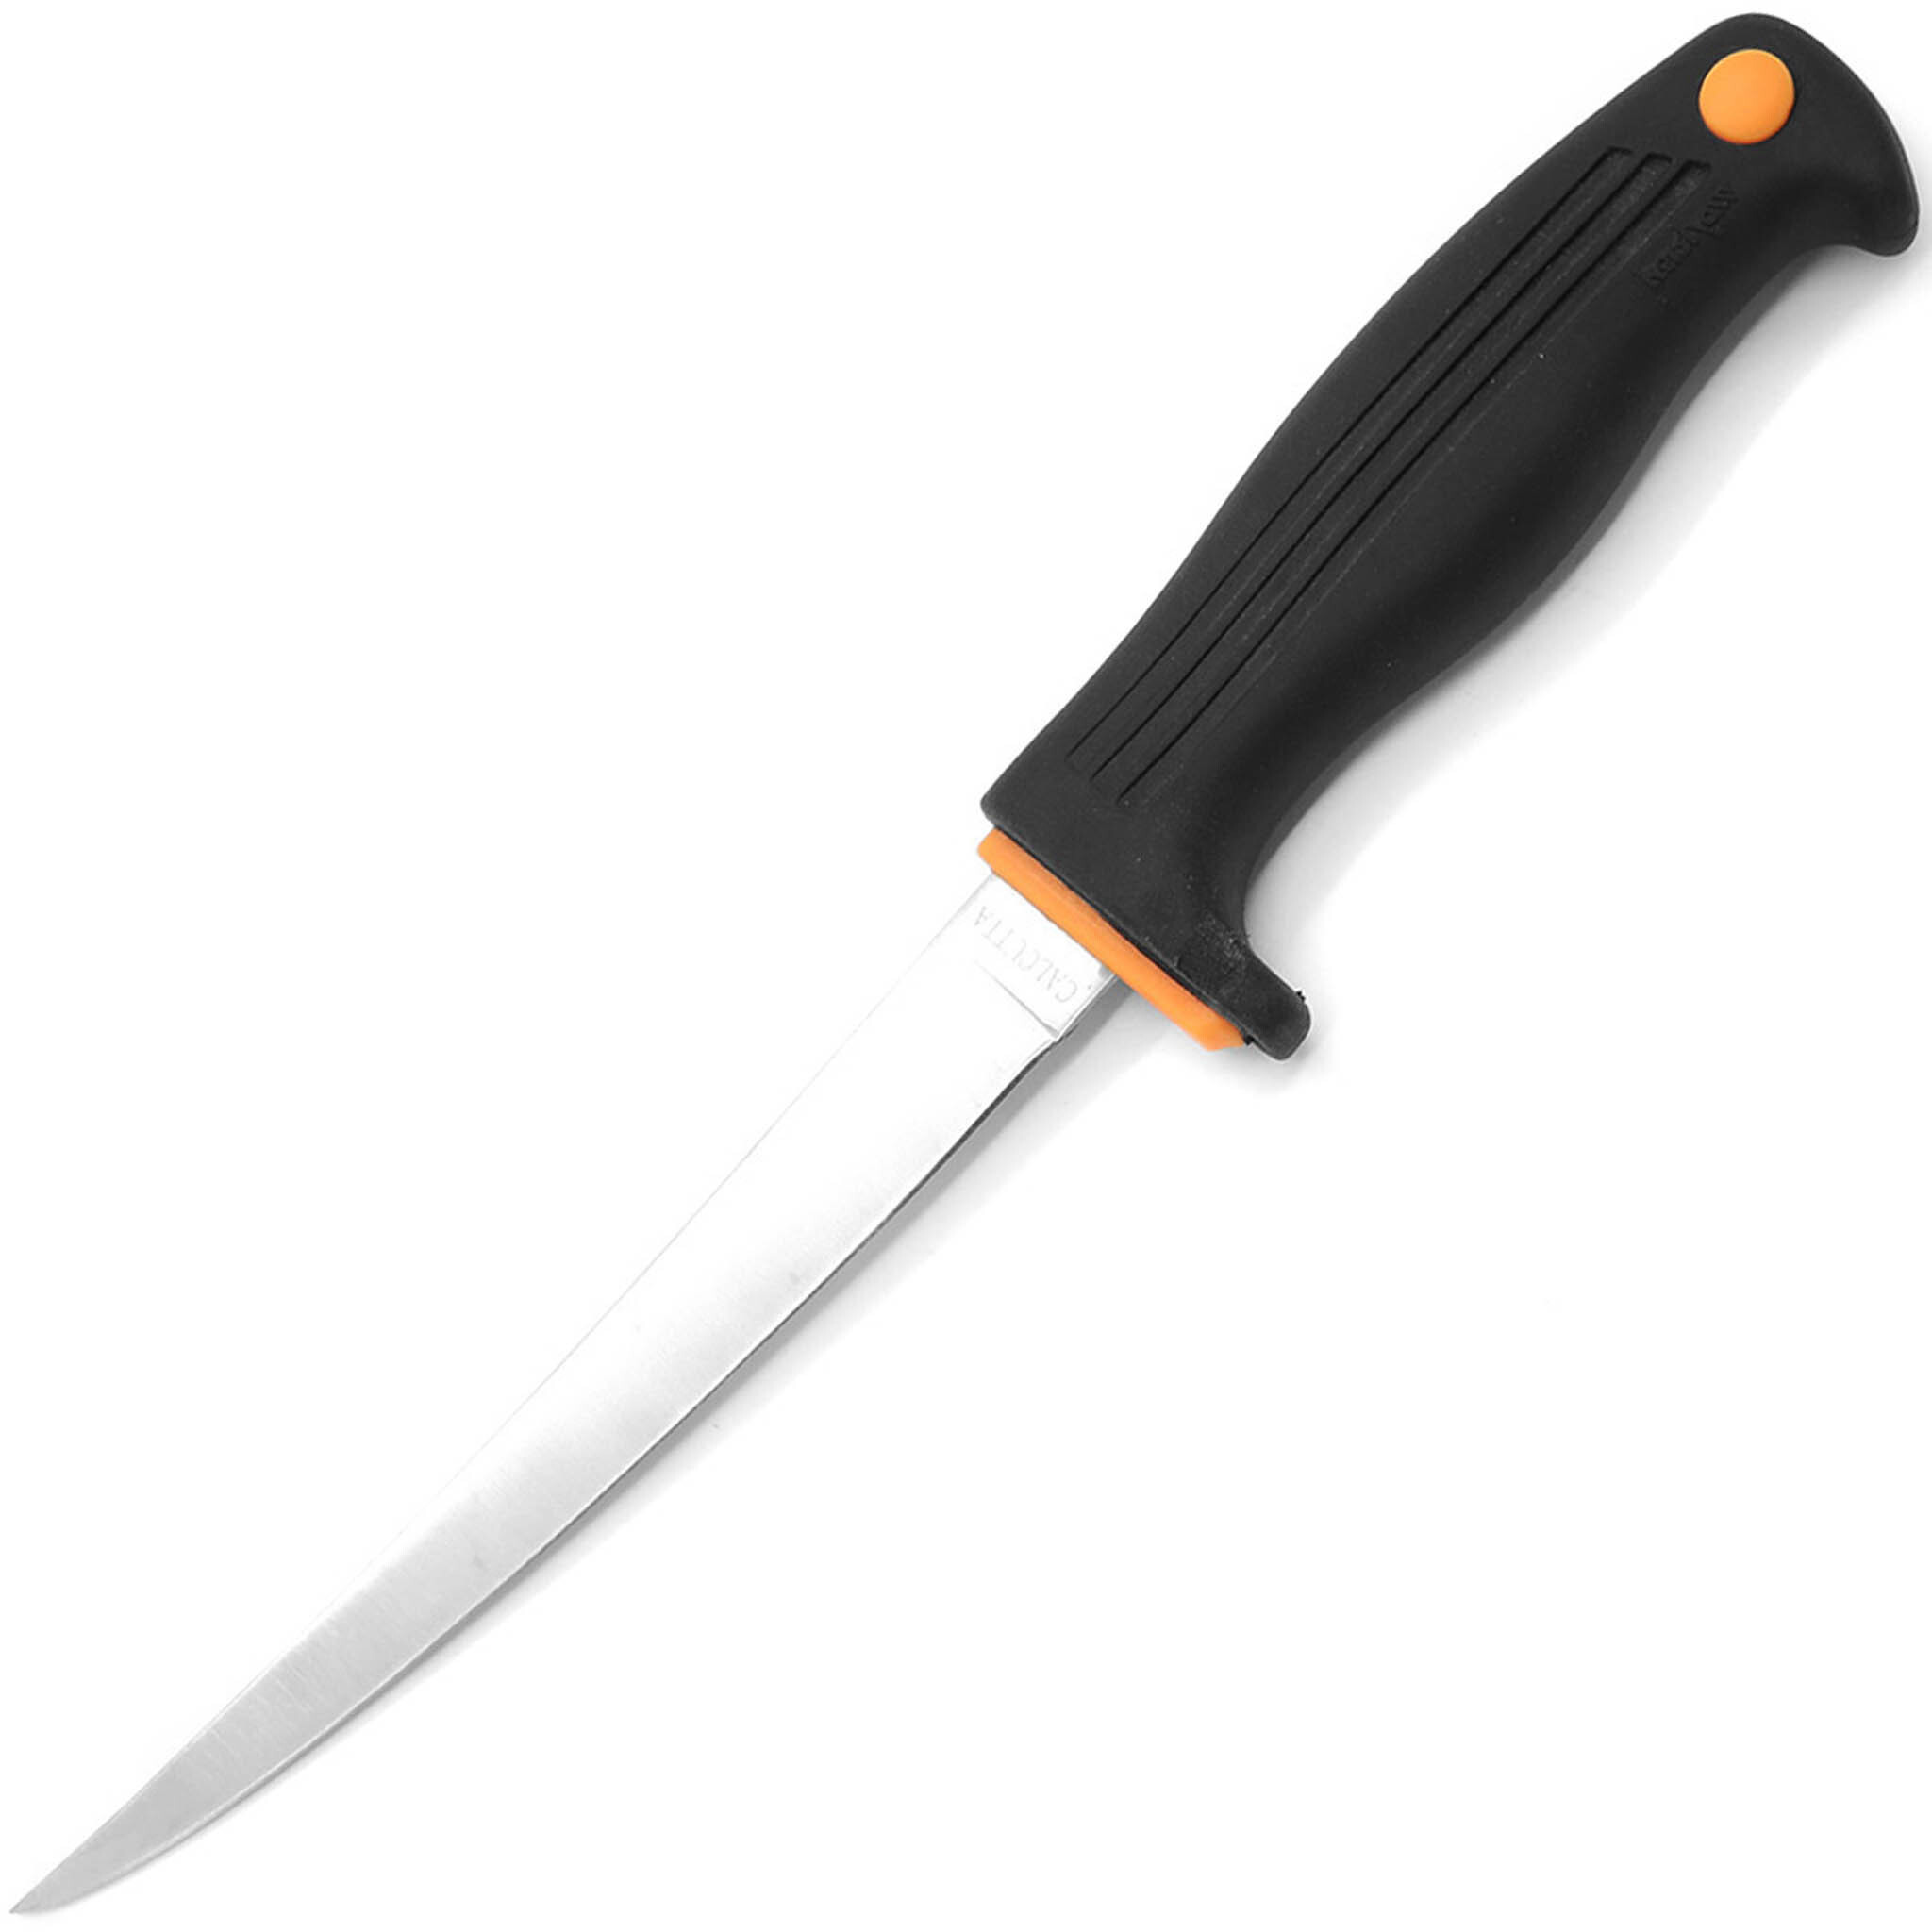 Нож филейный Kershaw Calcutta 6, сталь 420J2, рукоять пластик, черный